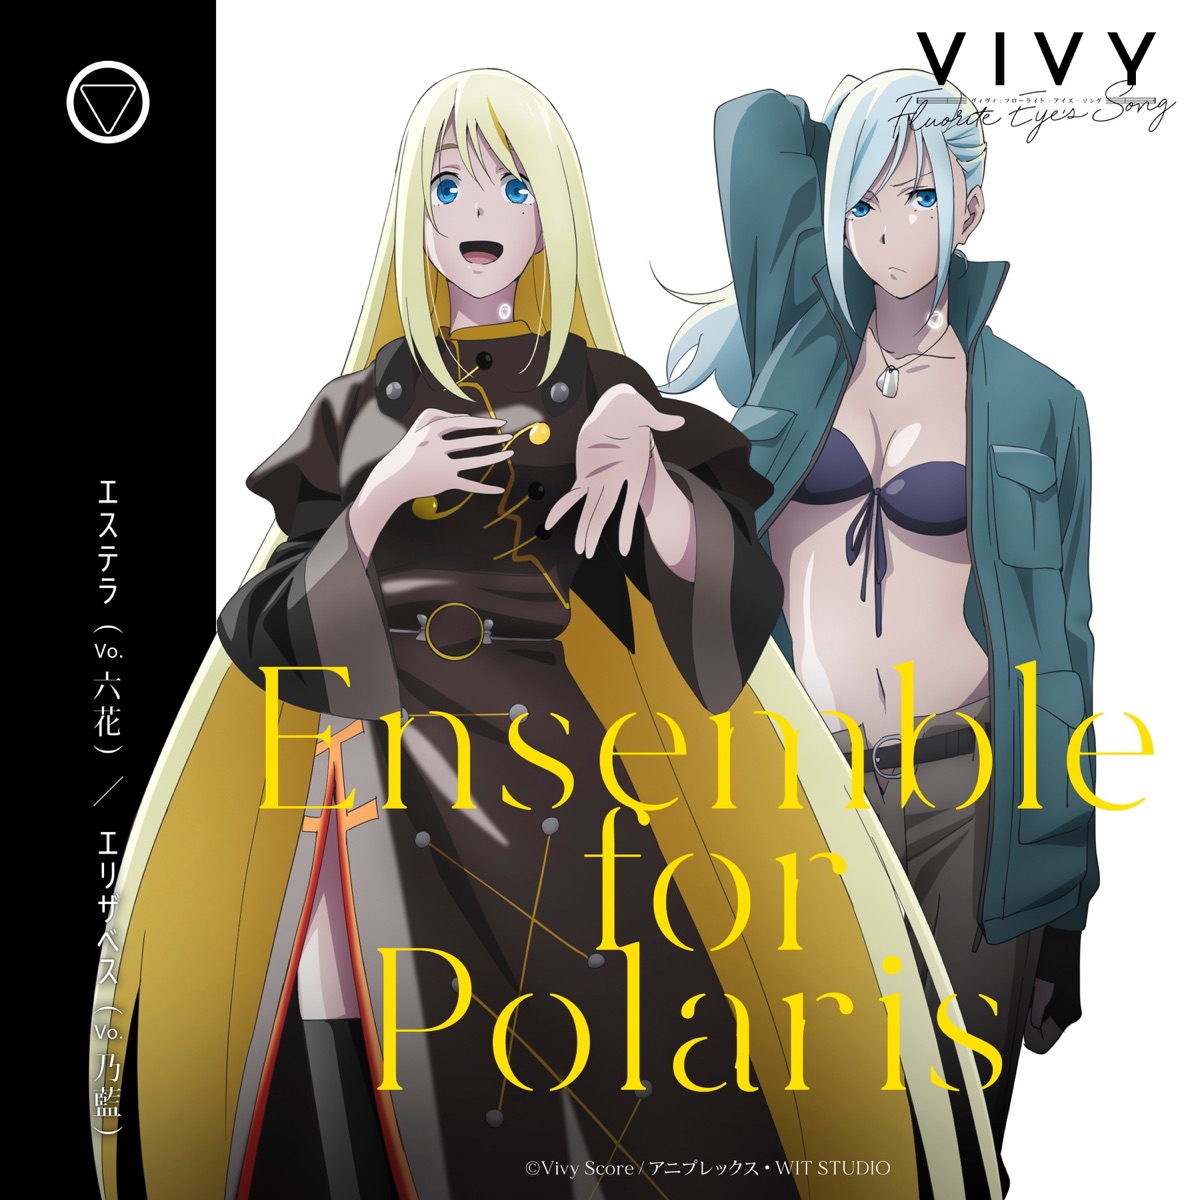 『エステラ(六花)&エリザベス(乃藍) - Ensemble for Polaris』収録の『Ensemble for Polaris』ジャケット